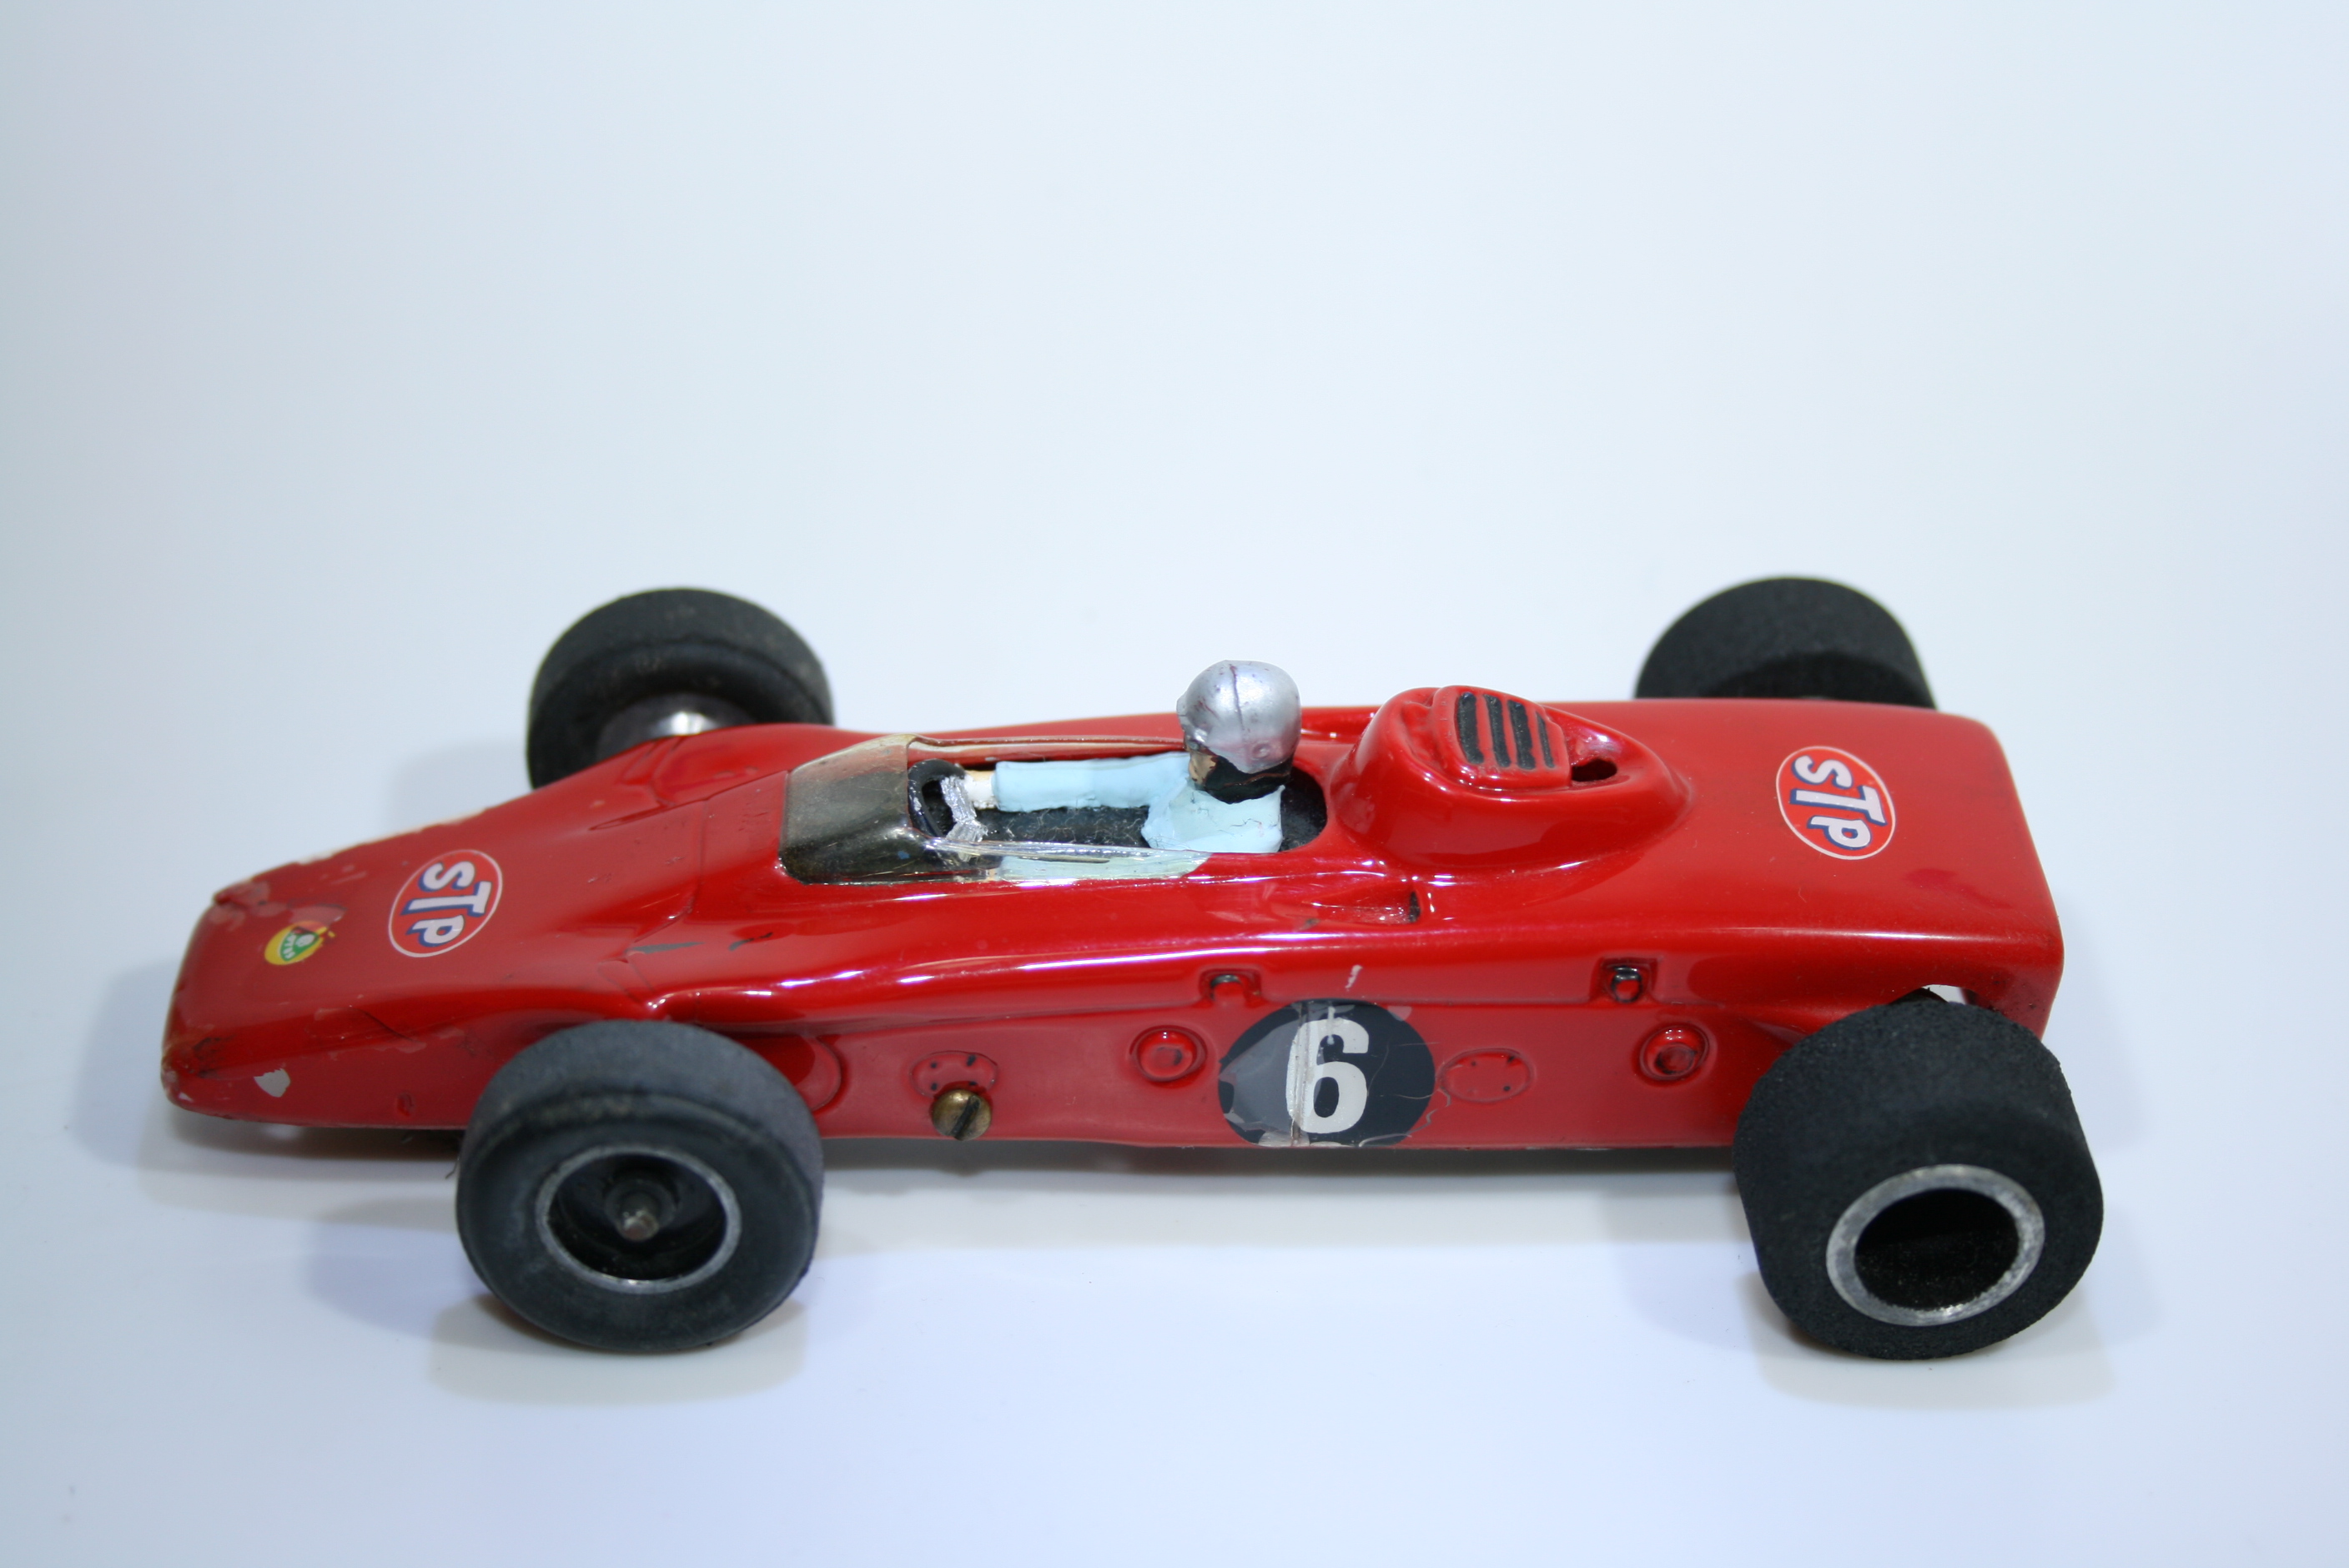 603 Lotus 56 1968 E Fittipaldi Betta and Classic